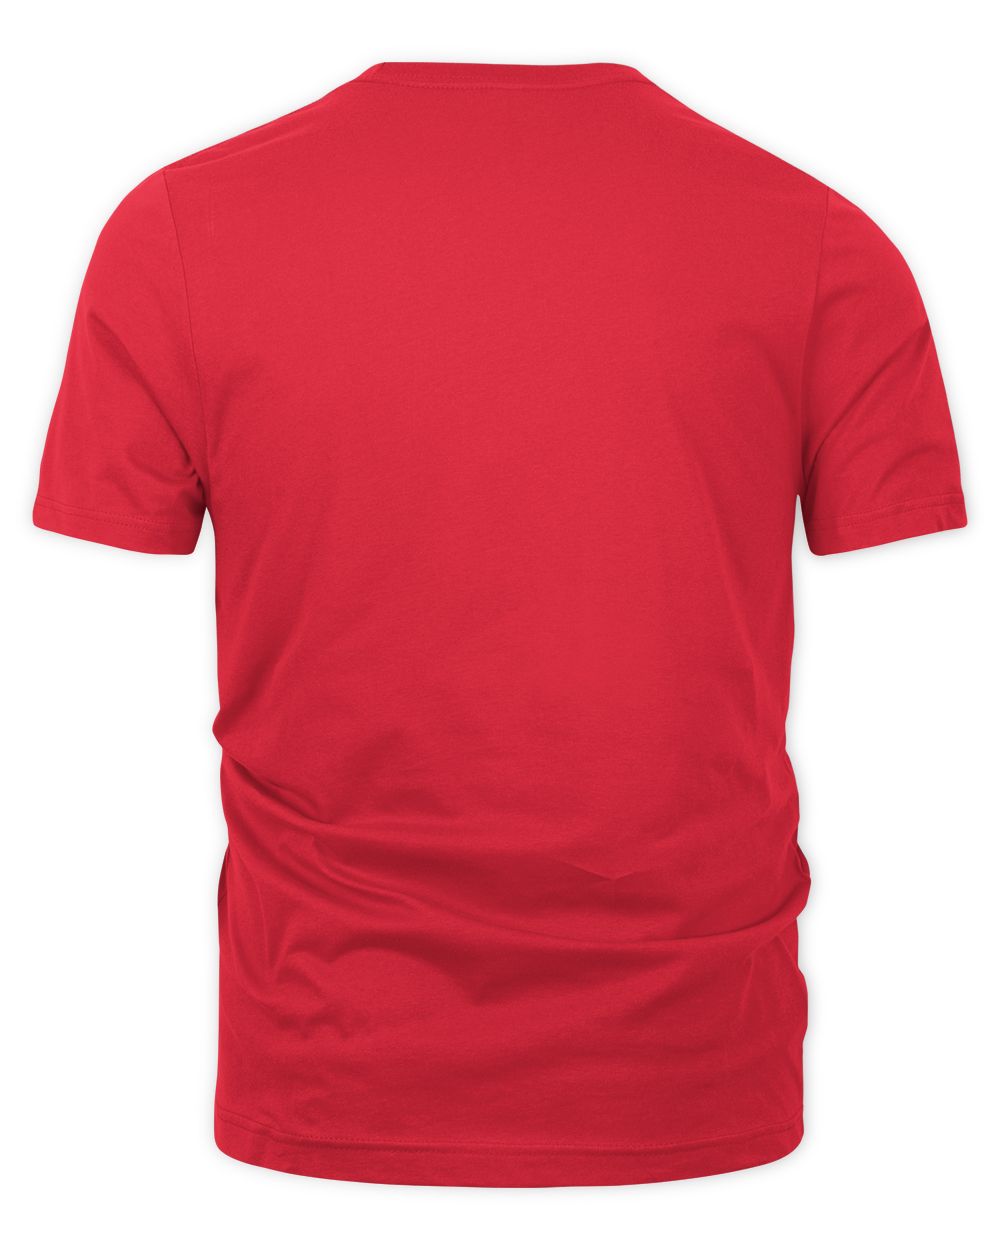 Alice In Chains Merch Devils Brew Mineral Wash Shirt Unisex Premium T-Shirt red 